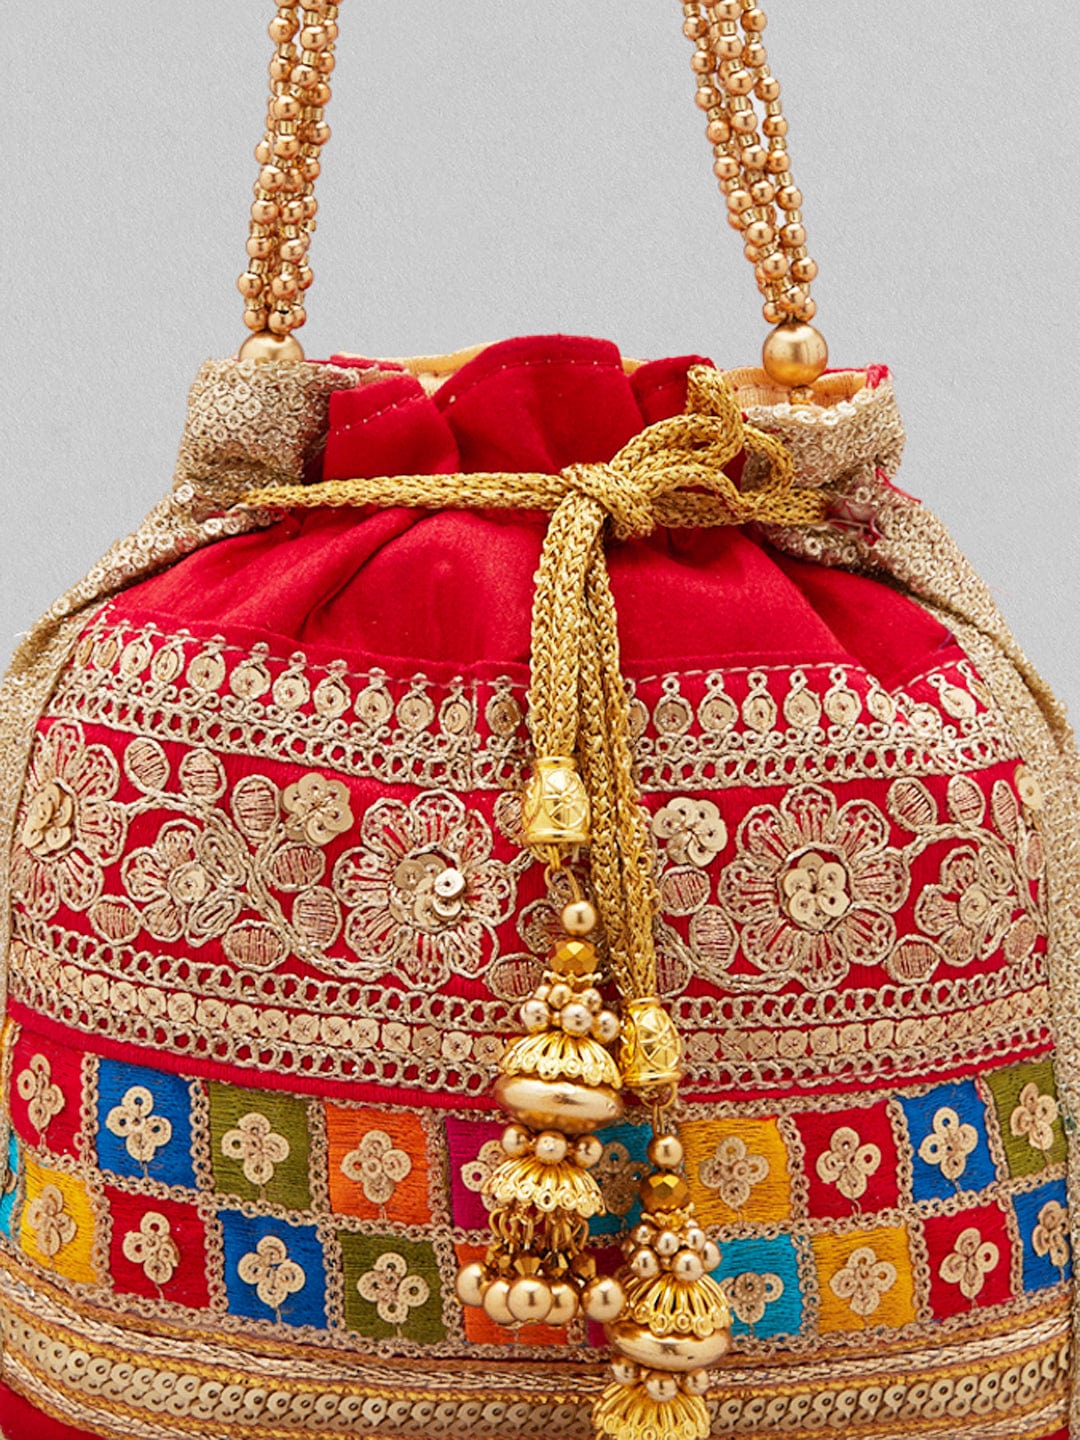 Leather Boho Shoulder Bag Yellow Handbag Purse Carved Tooled Strap Ethnic  Design | eBay